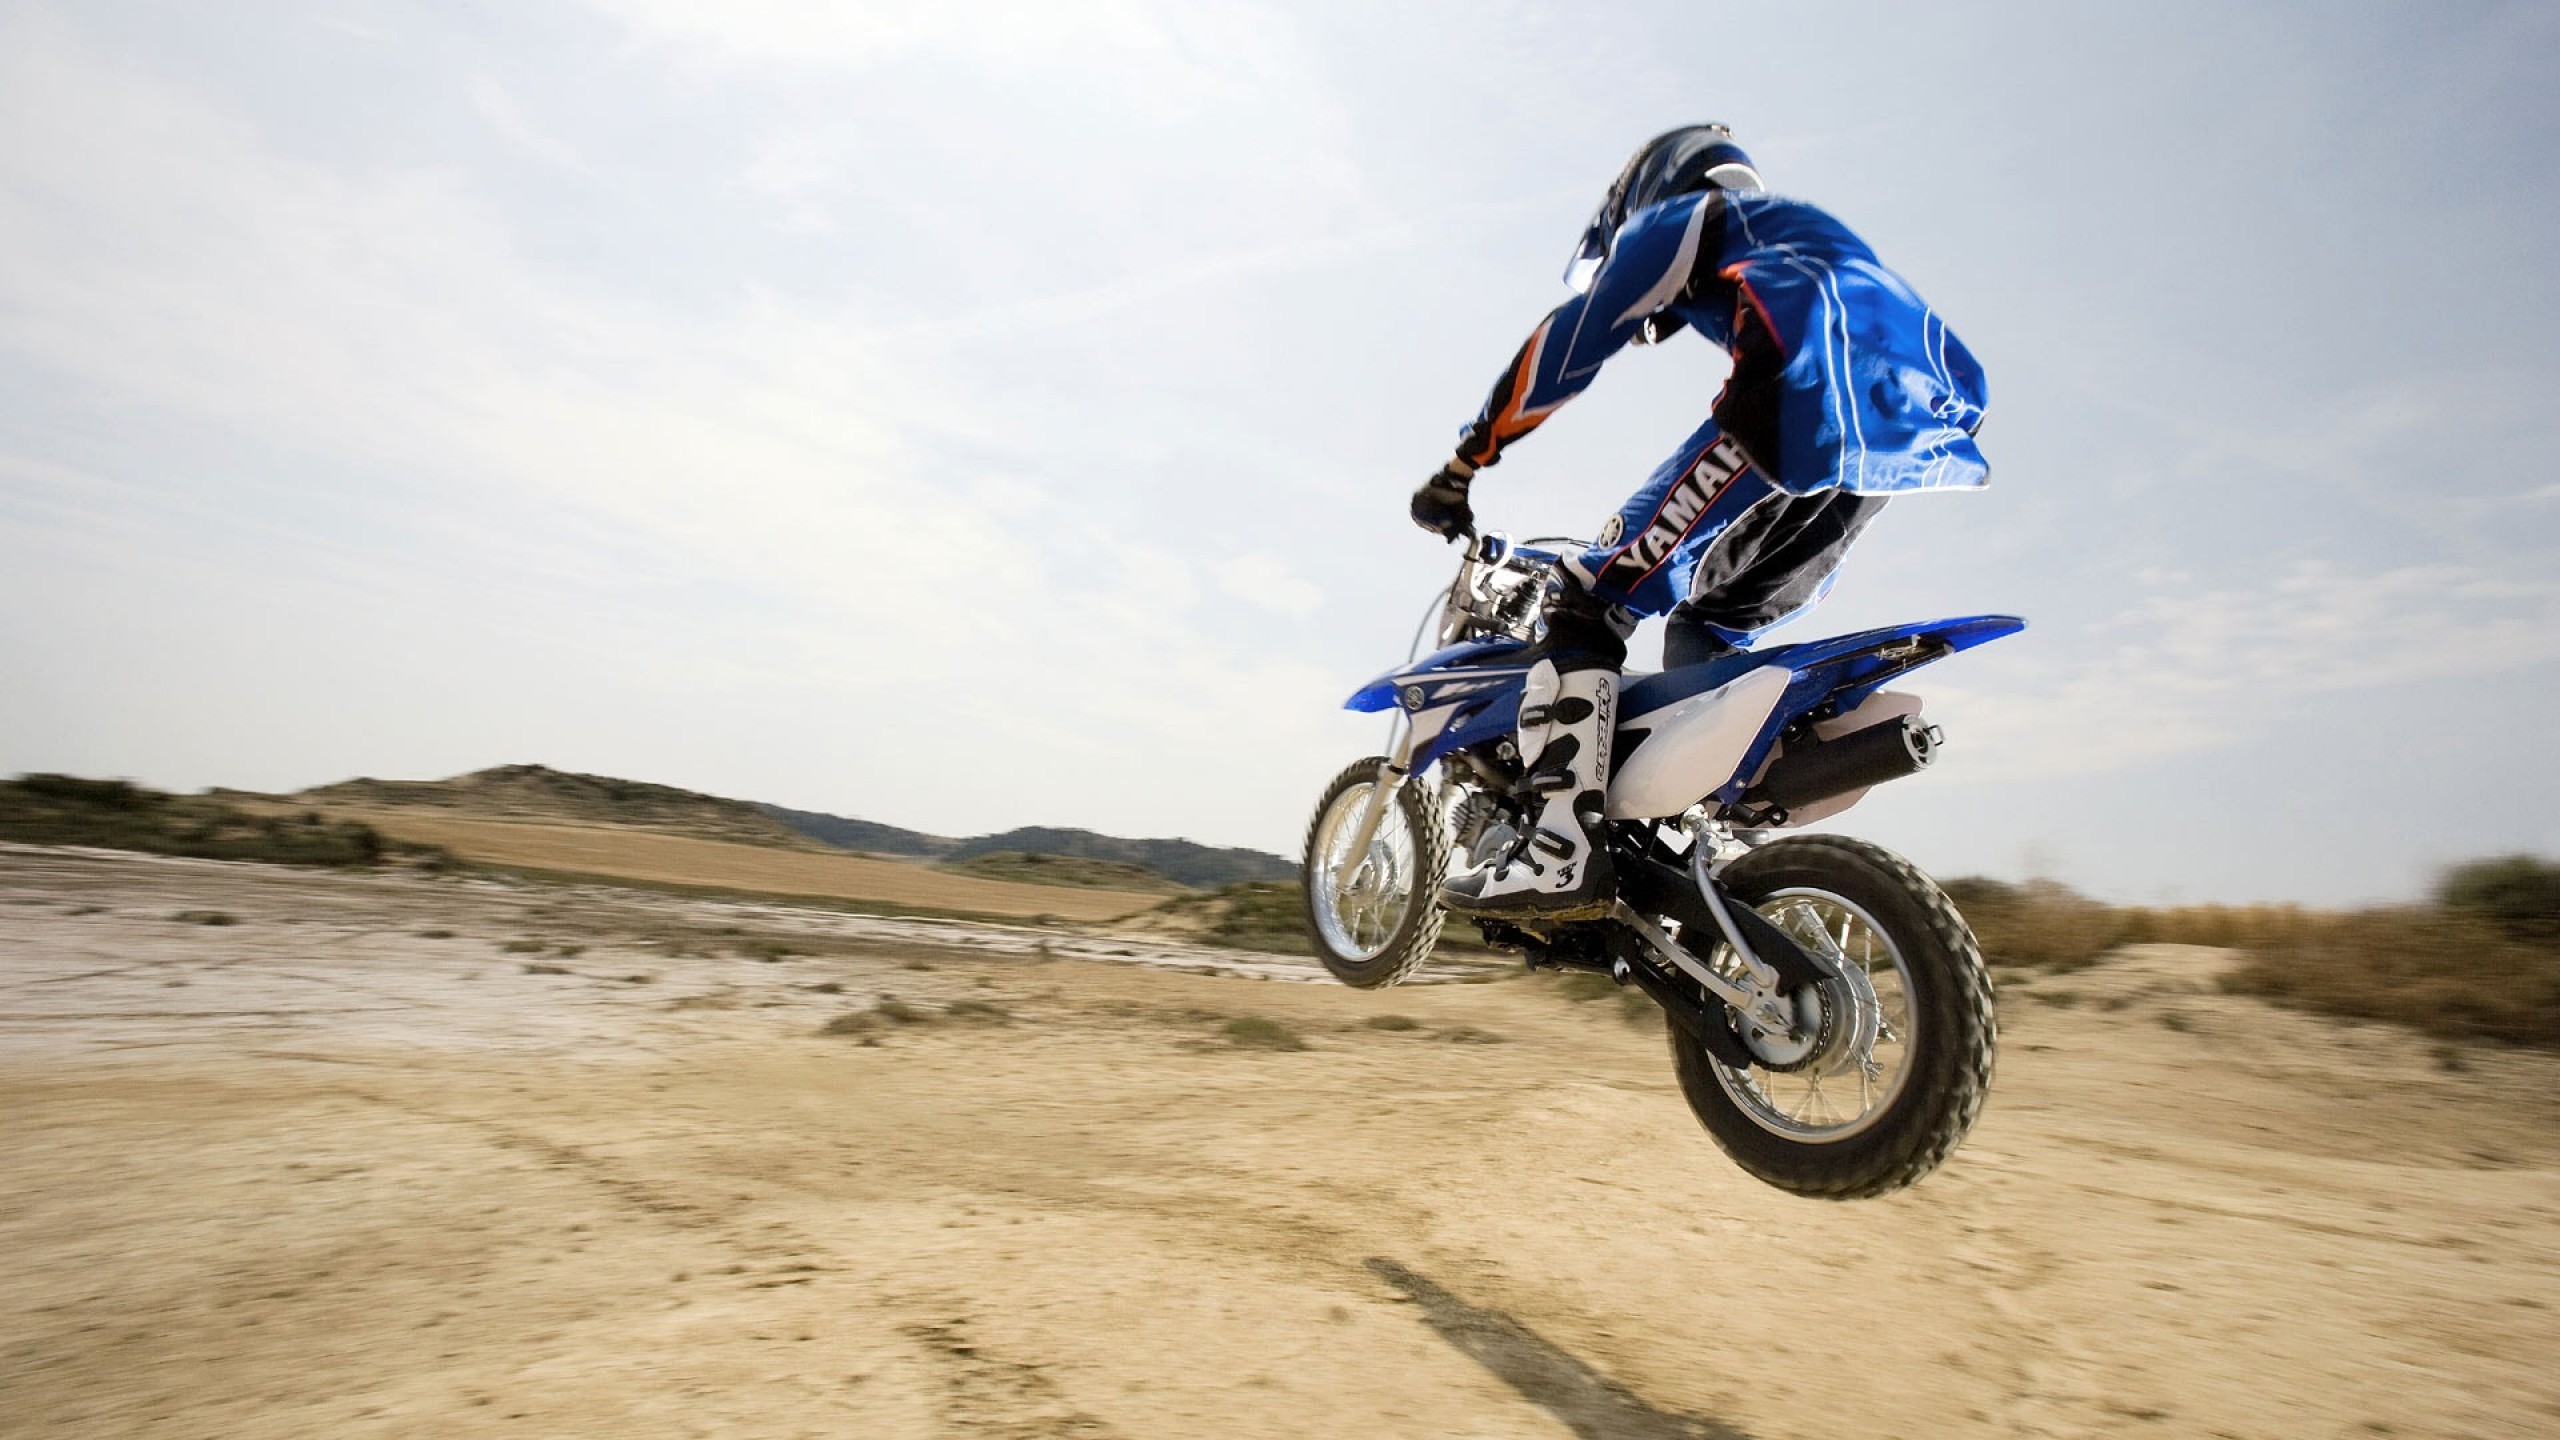 2560x1440 High Resolution Motocross Yamaha Dirt Bike Wallpaper HD 7 .